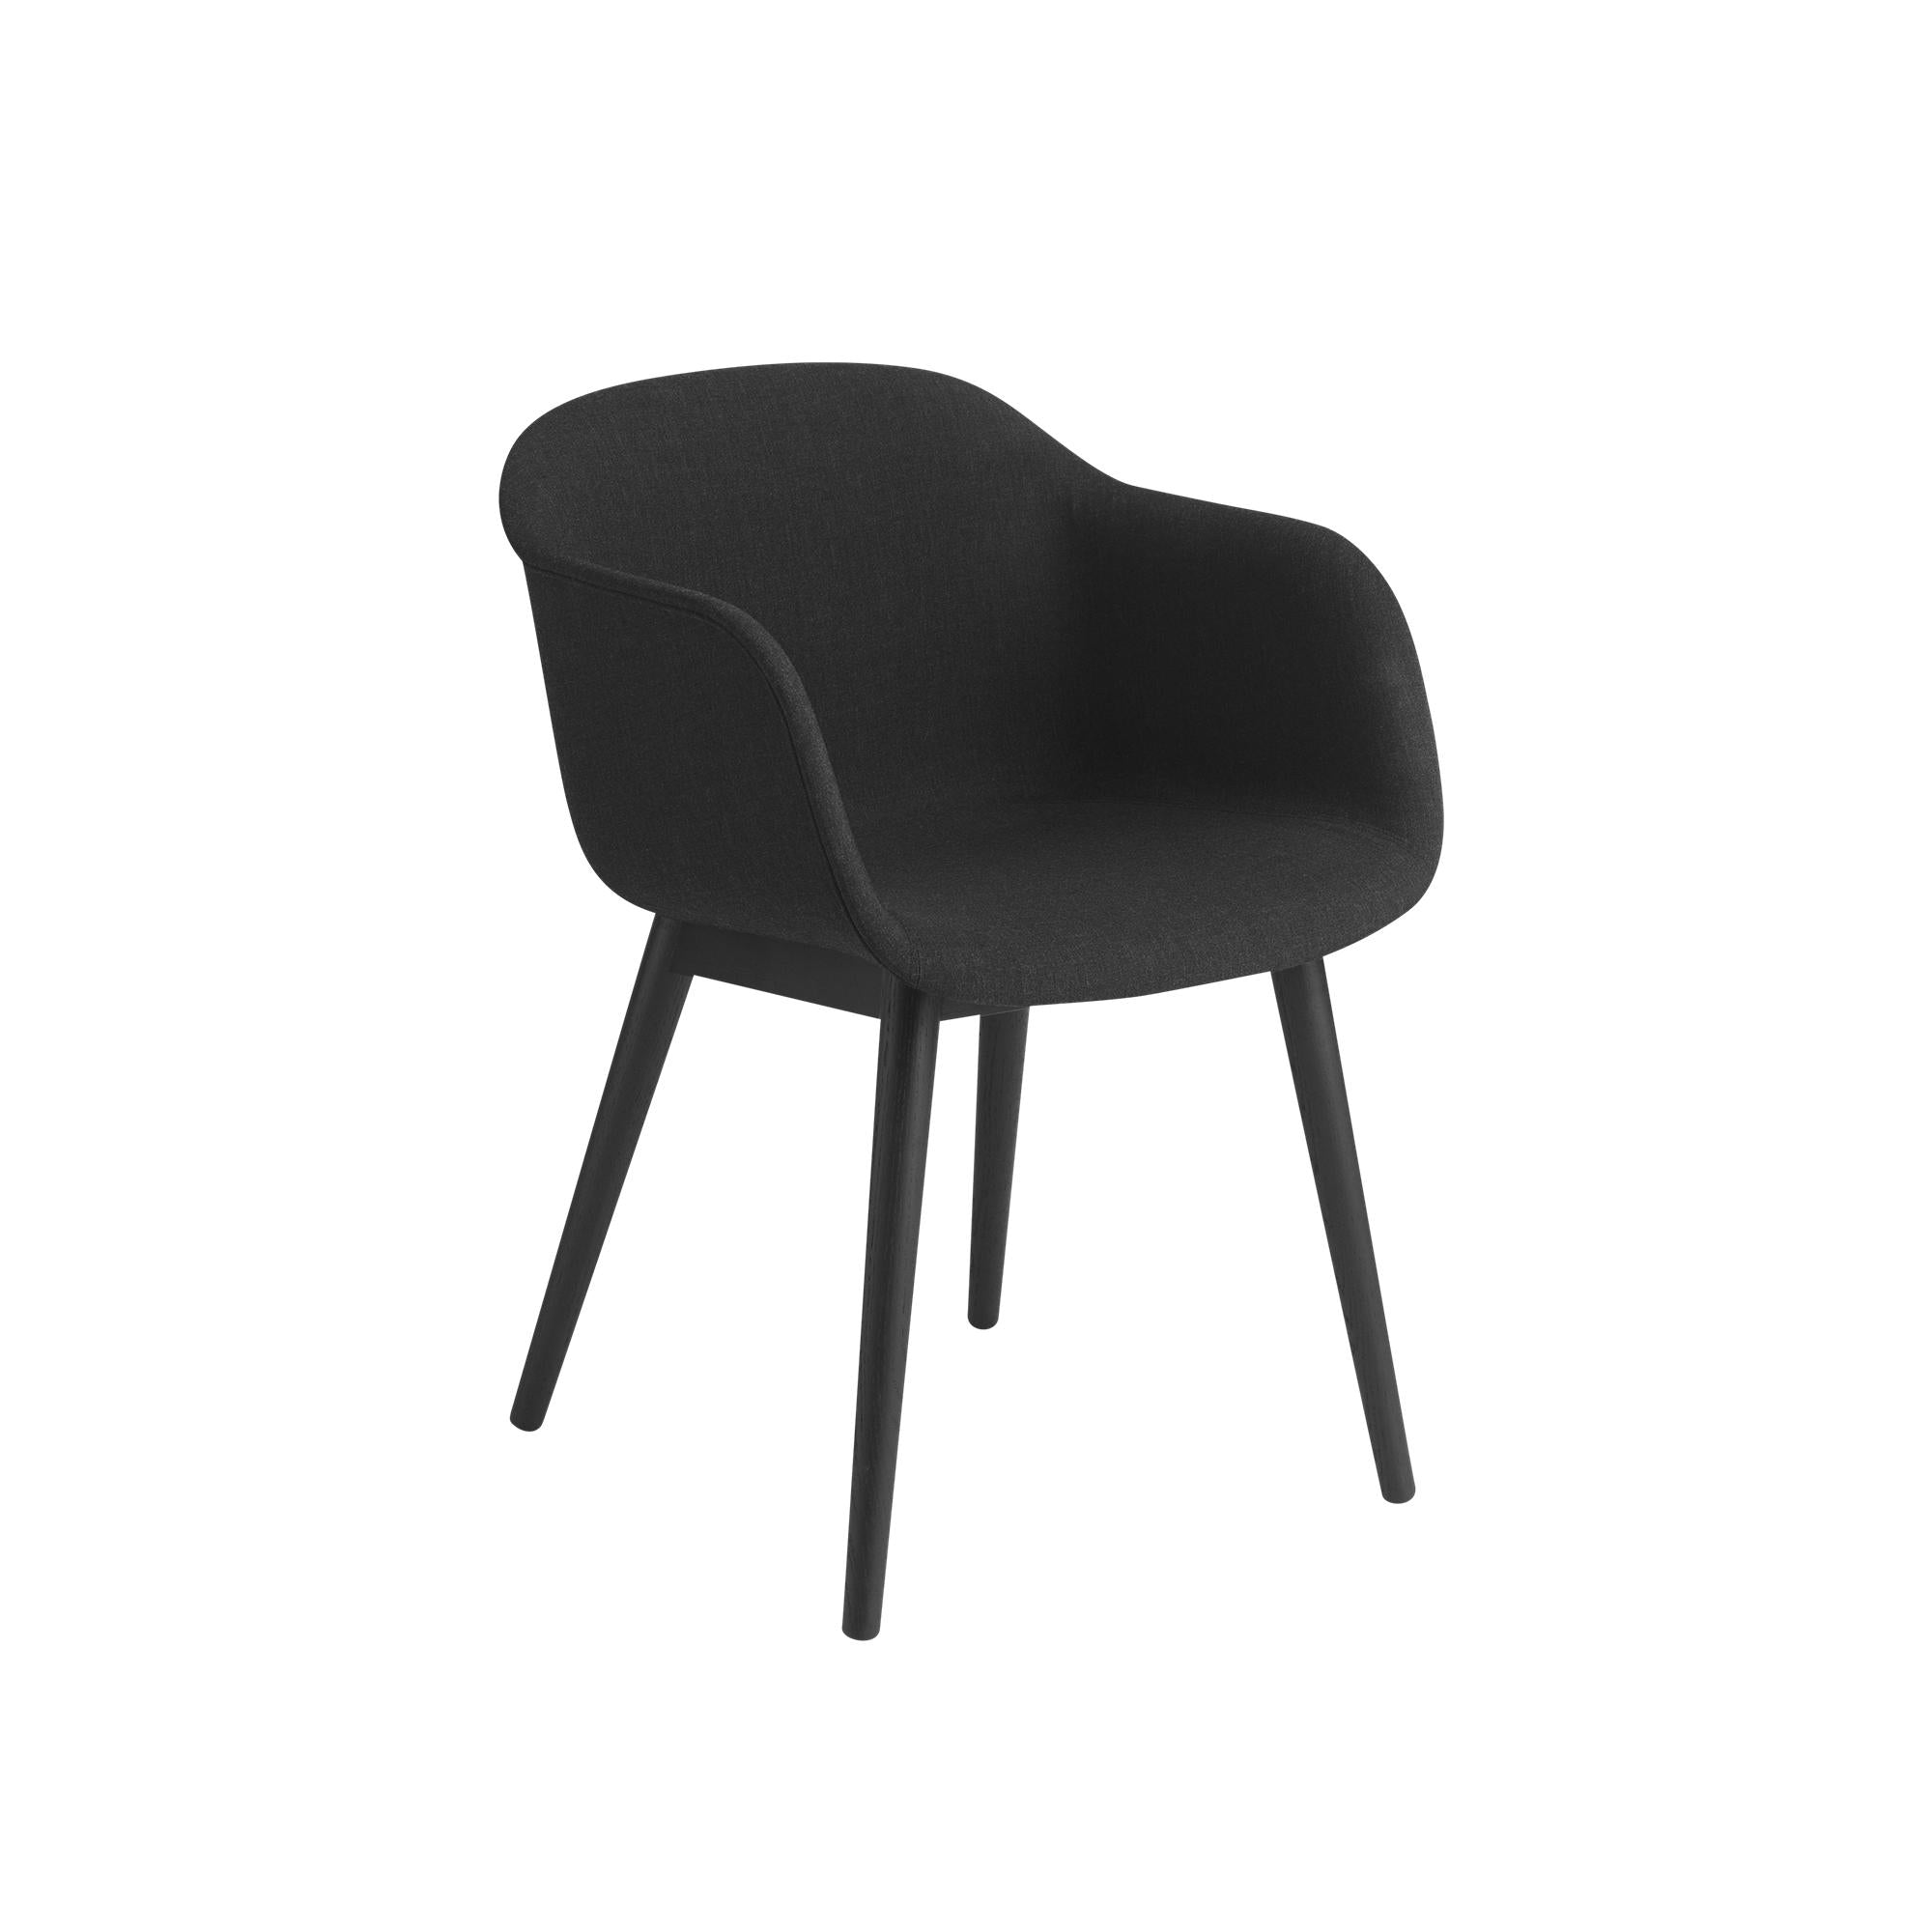 Muuto vezel fauteuil houten benen, stoffen stoel, zwart